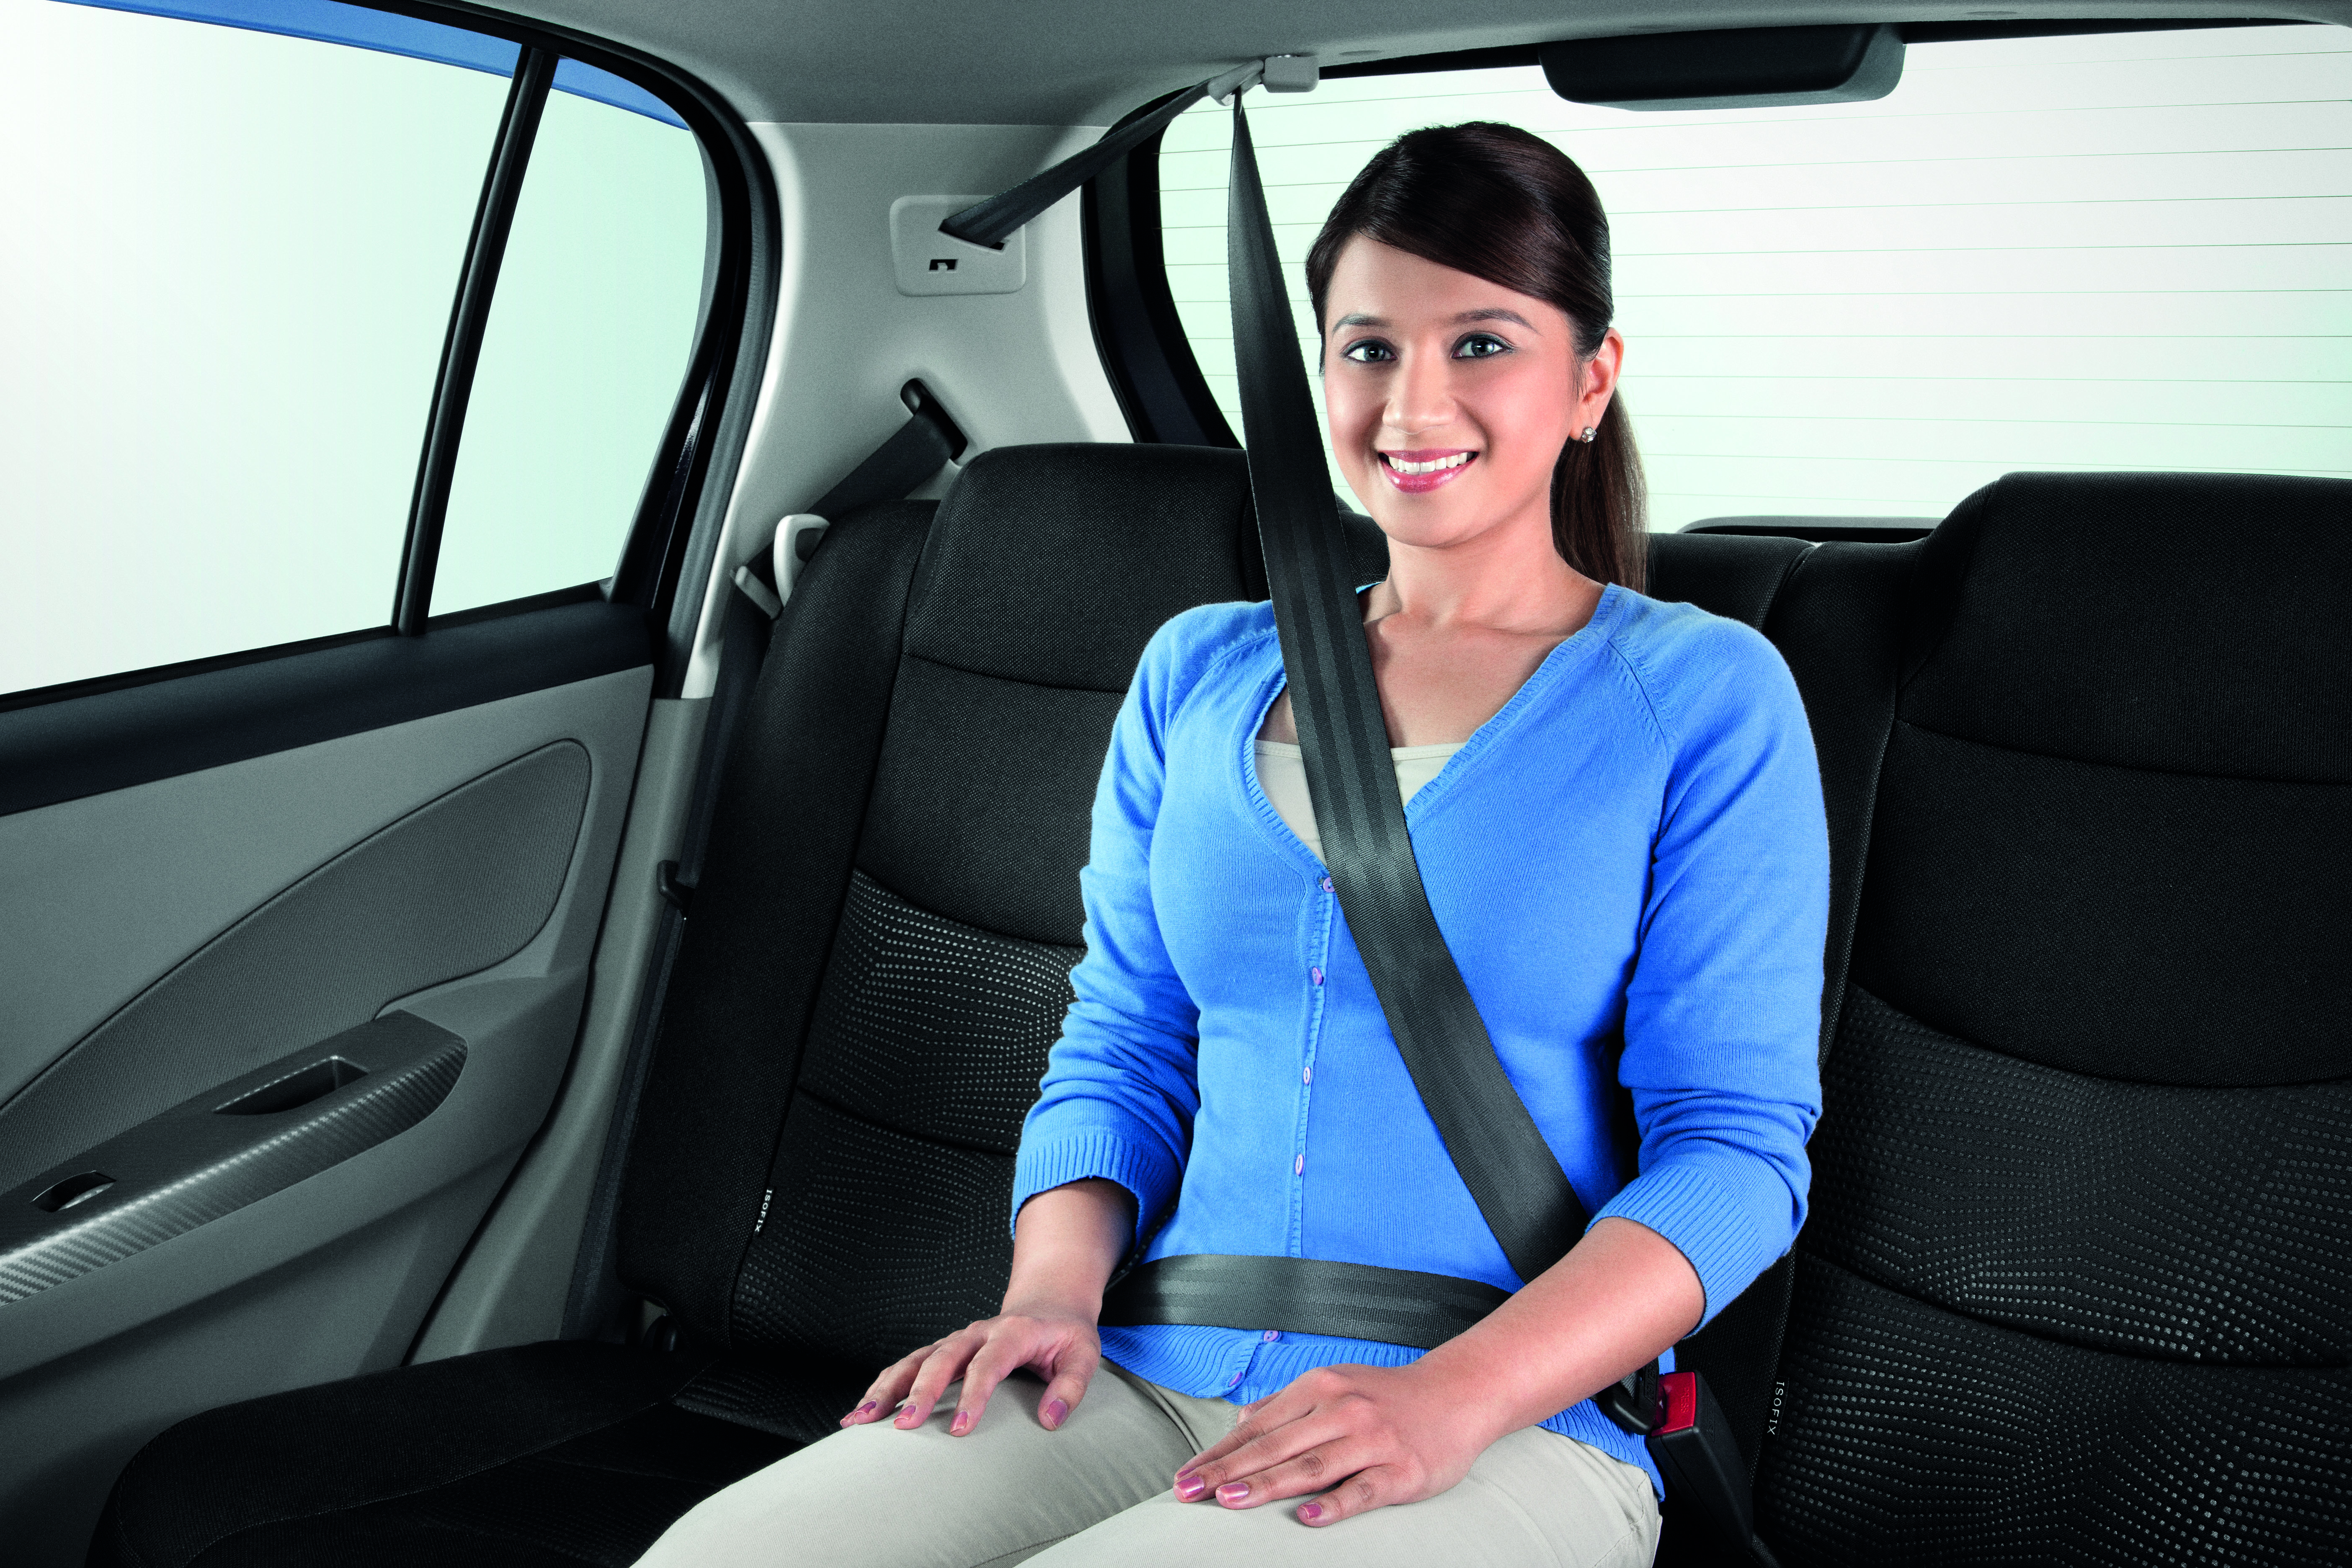 Ремень безопасности передних сидений. Seat Belt. Пассажир в машине. Ремень безопасности для автомобиля. Пристегнутый ремень авто.